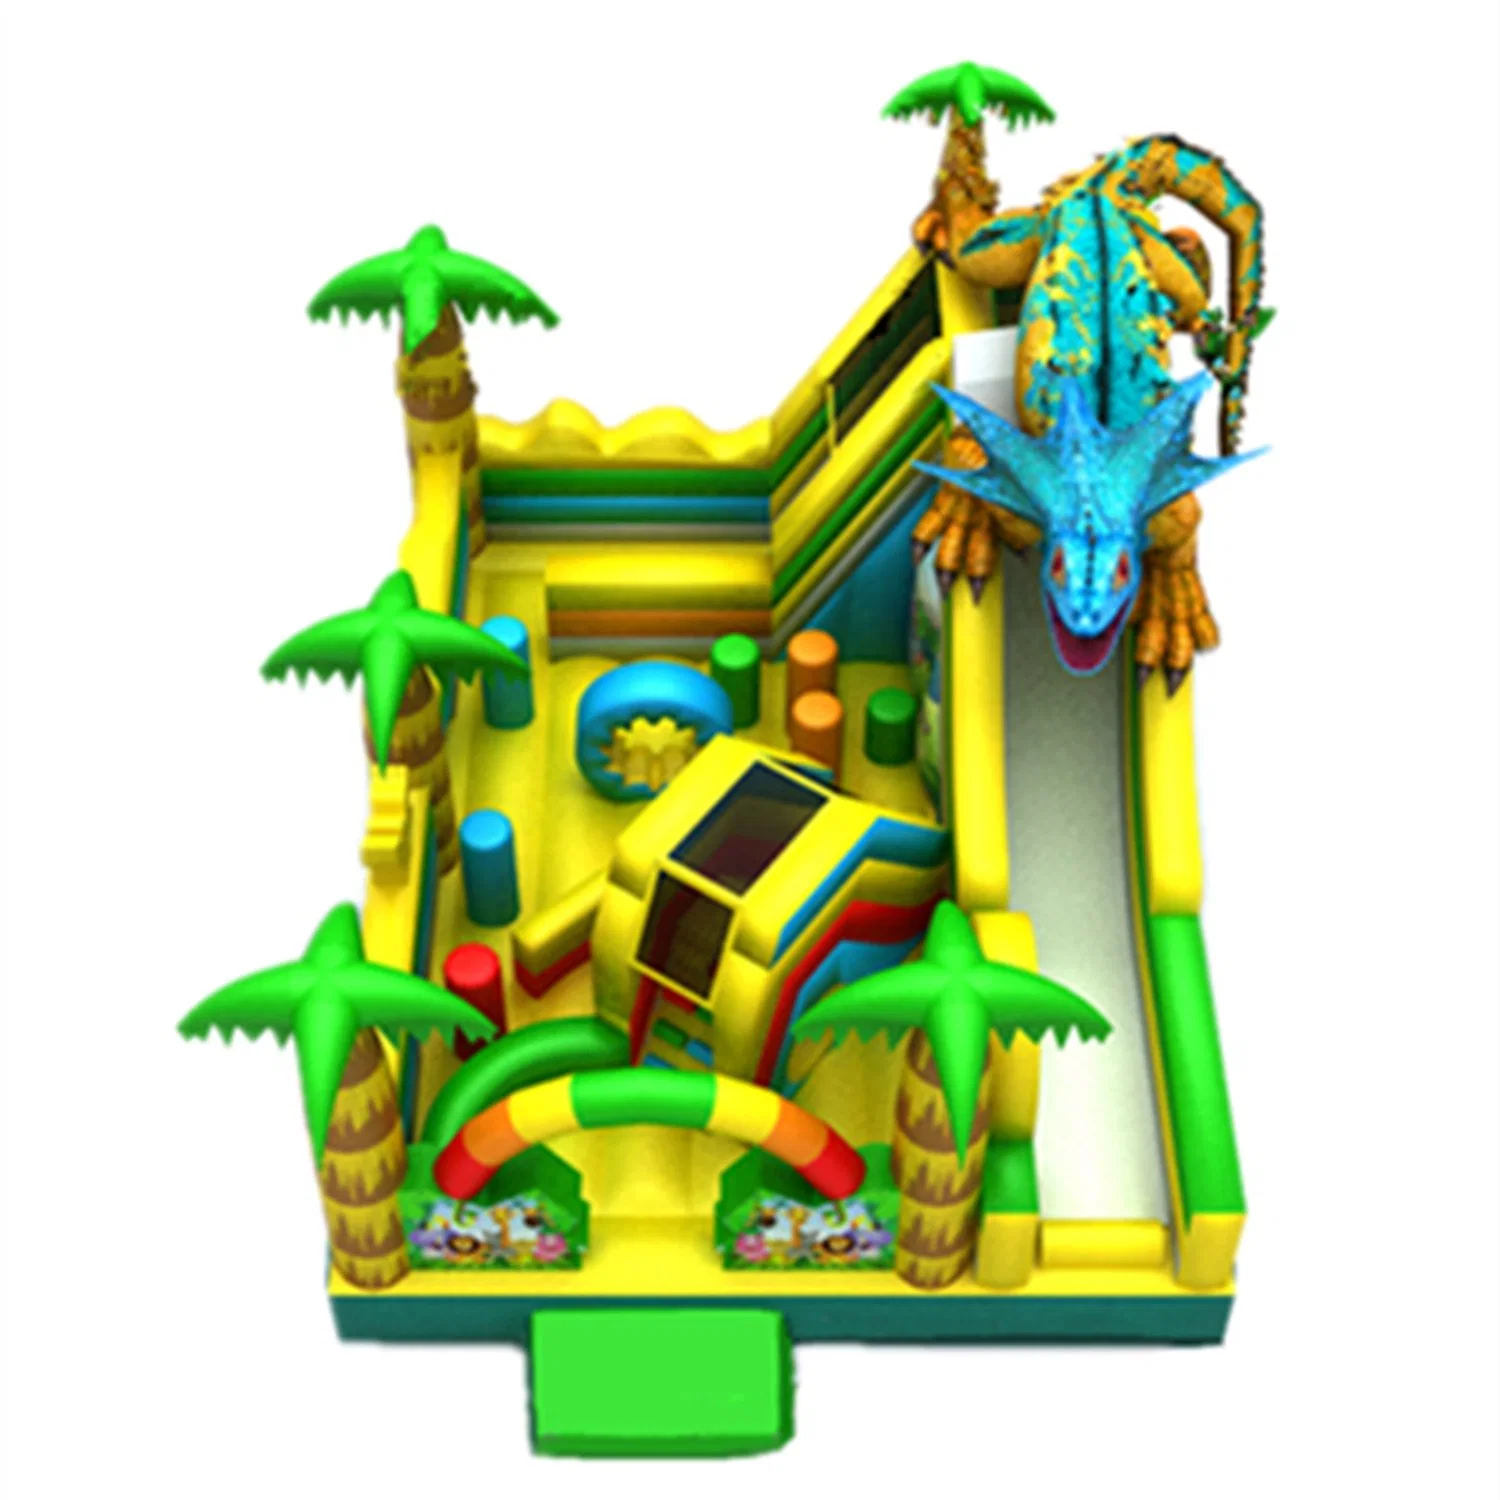 Outdoor Children's Inflatable Castle Amusement Park Equipment Slide Toy 51CB